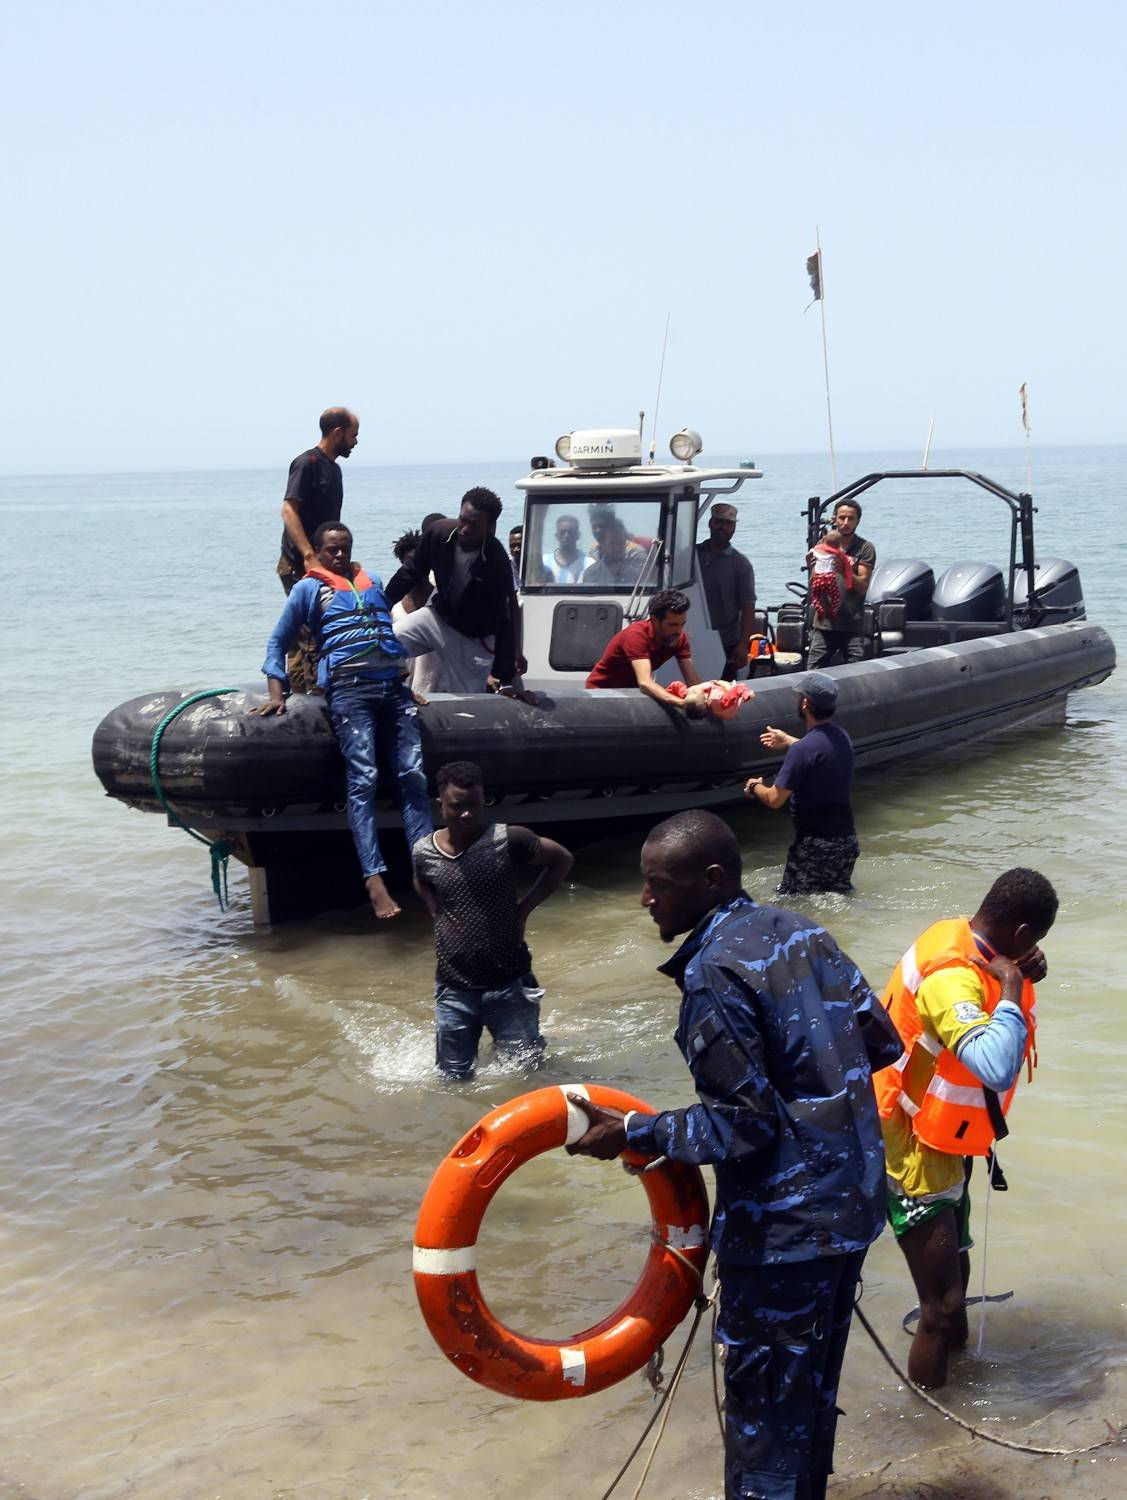 La Guardia costiera libica: "Non abbiamo salvagenti per salvare tutti"